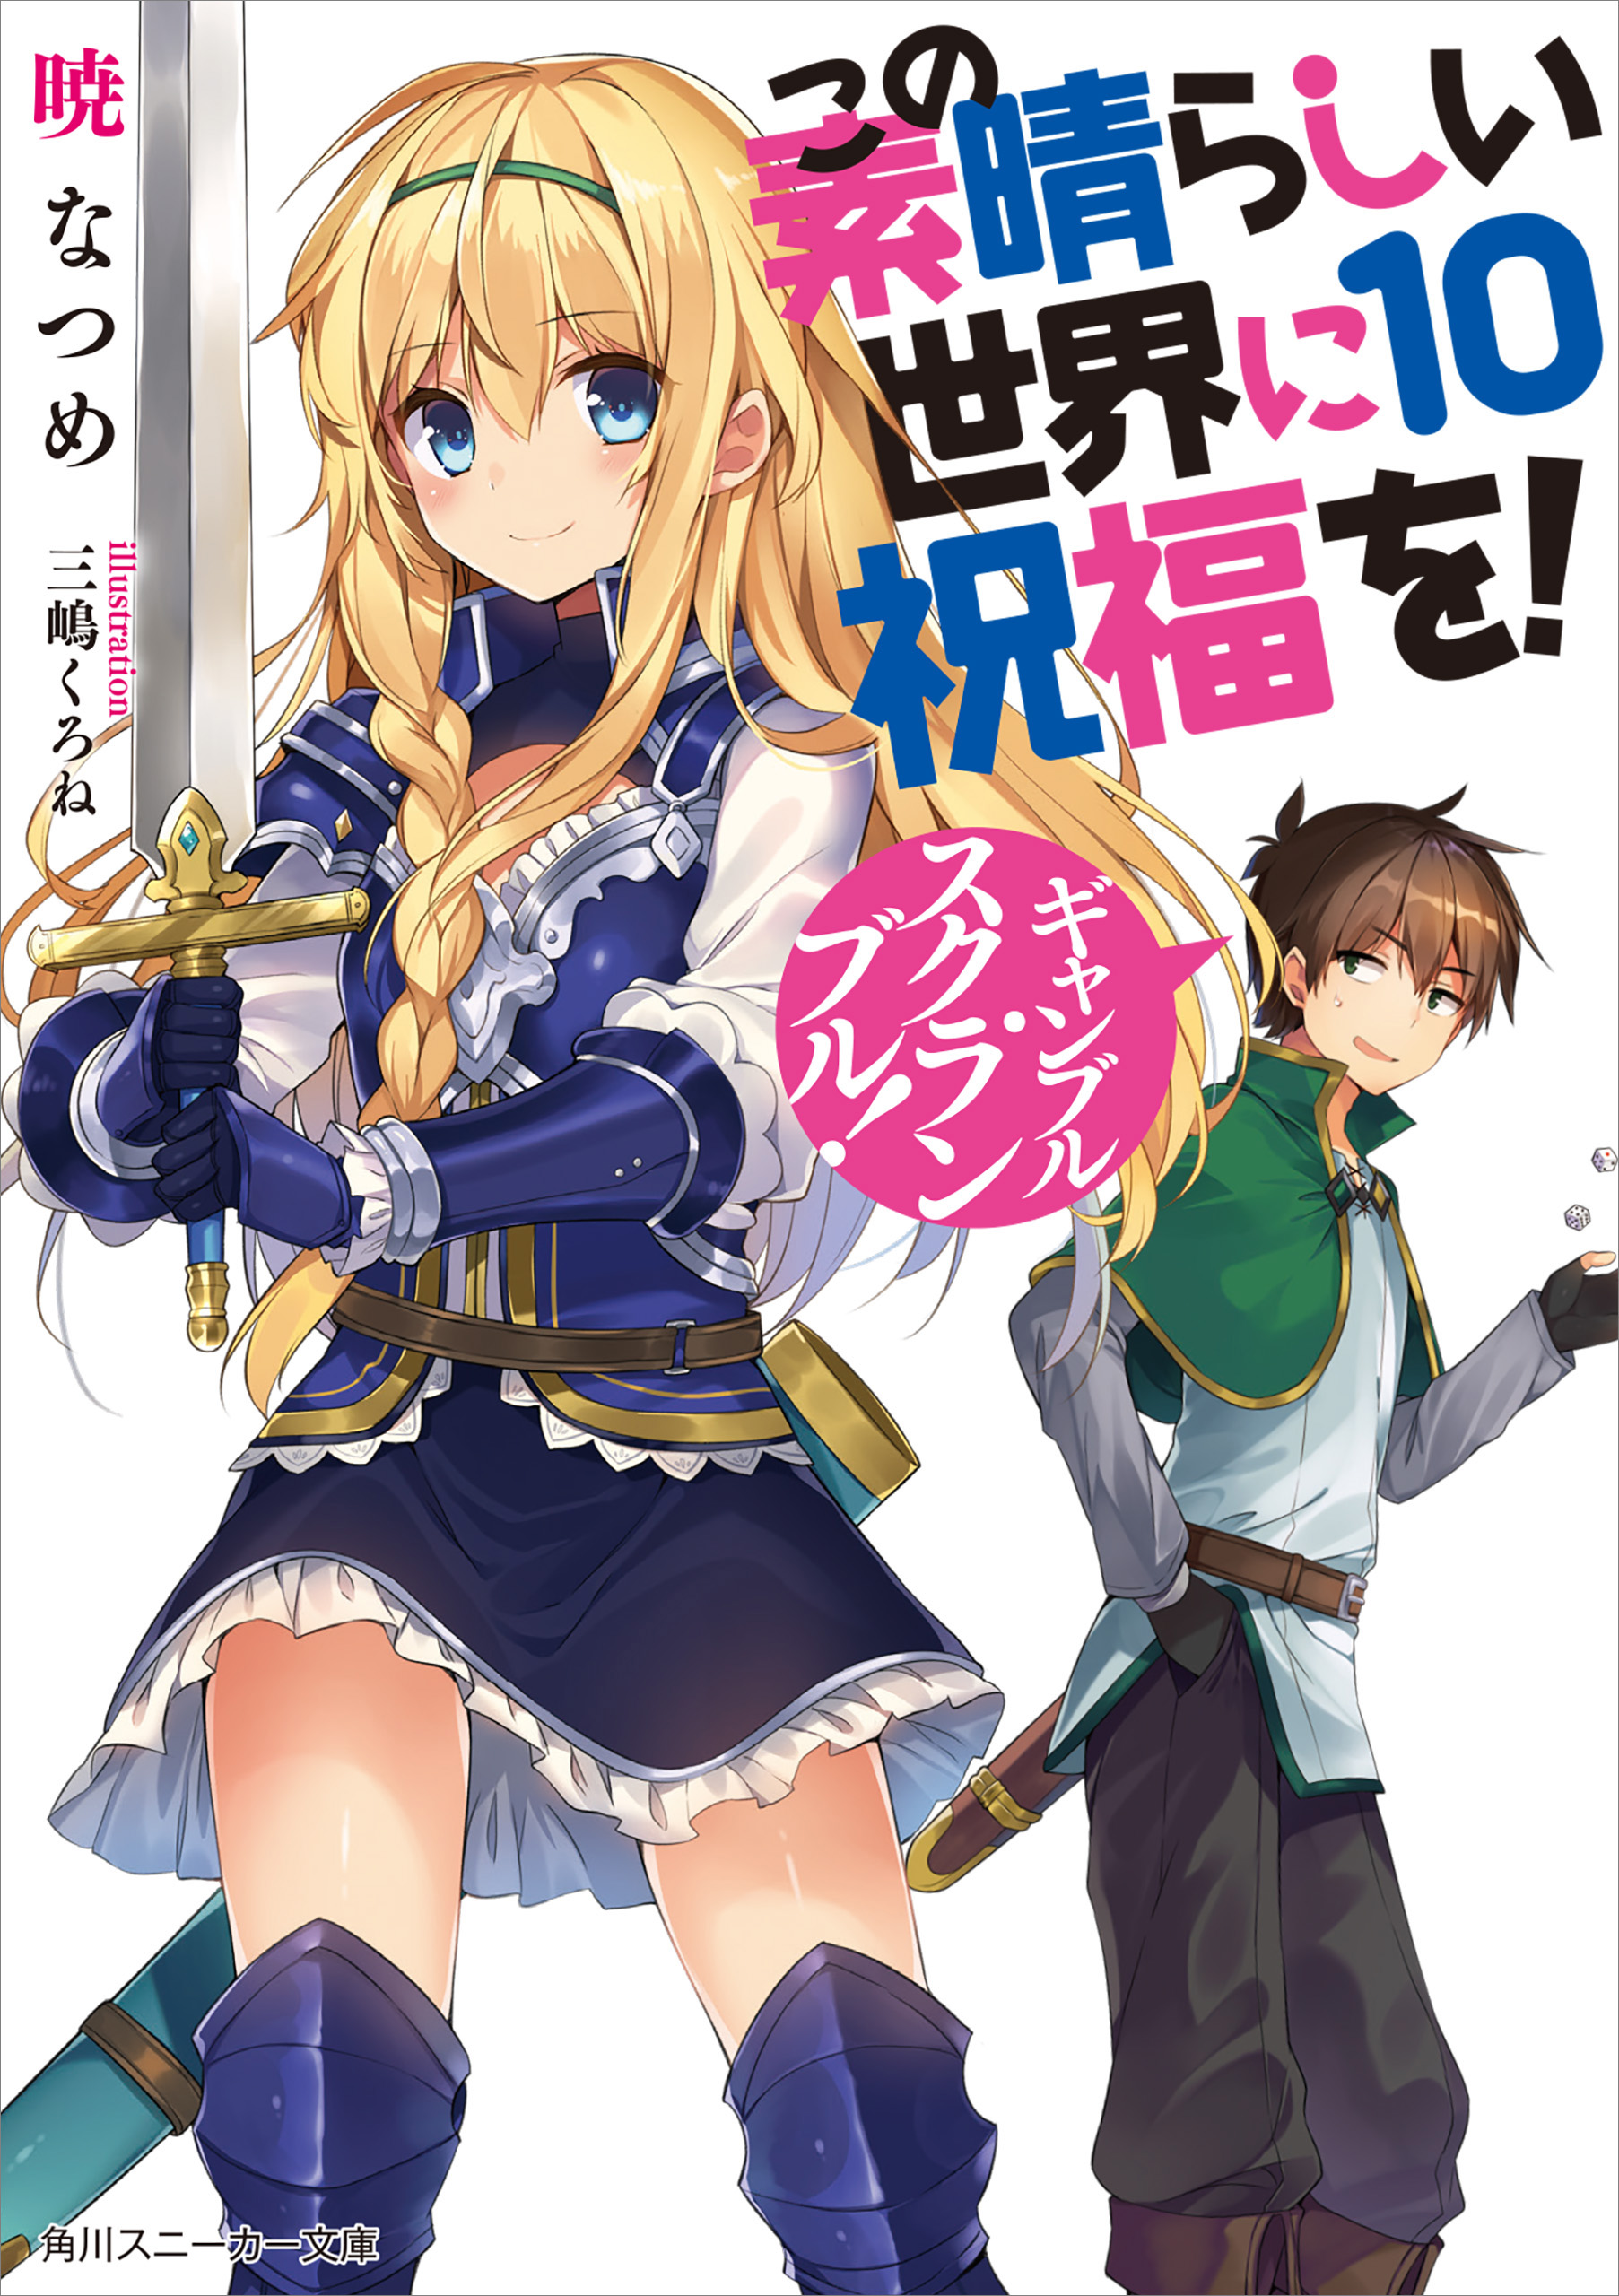 frugter benzin ulækkert Konosuba Light Novel Volume 10 | Kono Subarashii Sekai ni Shukufuku wo!  Wiki | Fandom